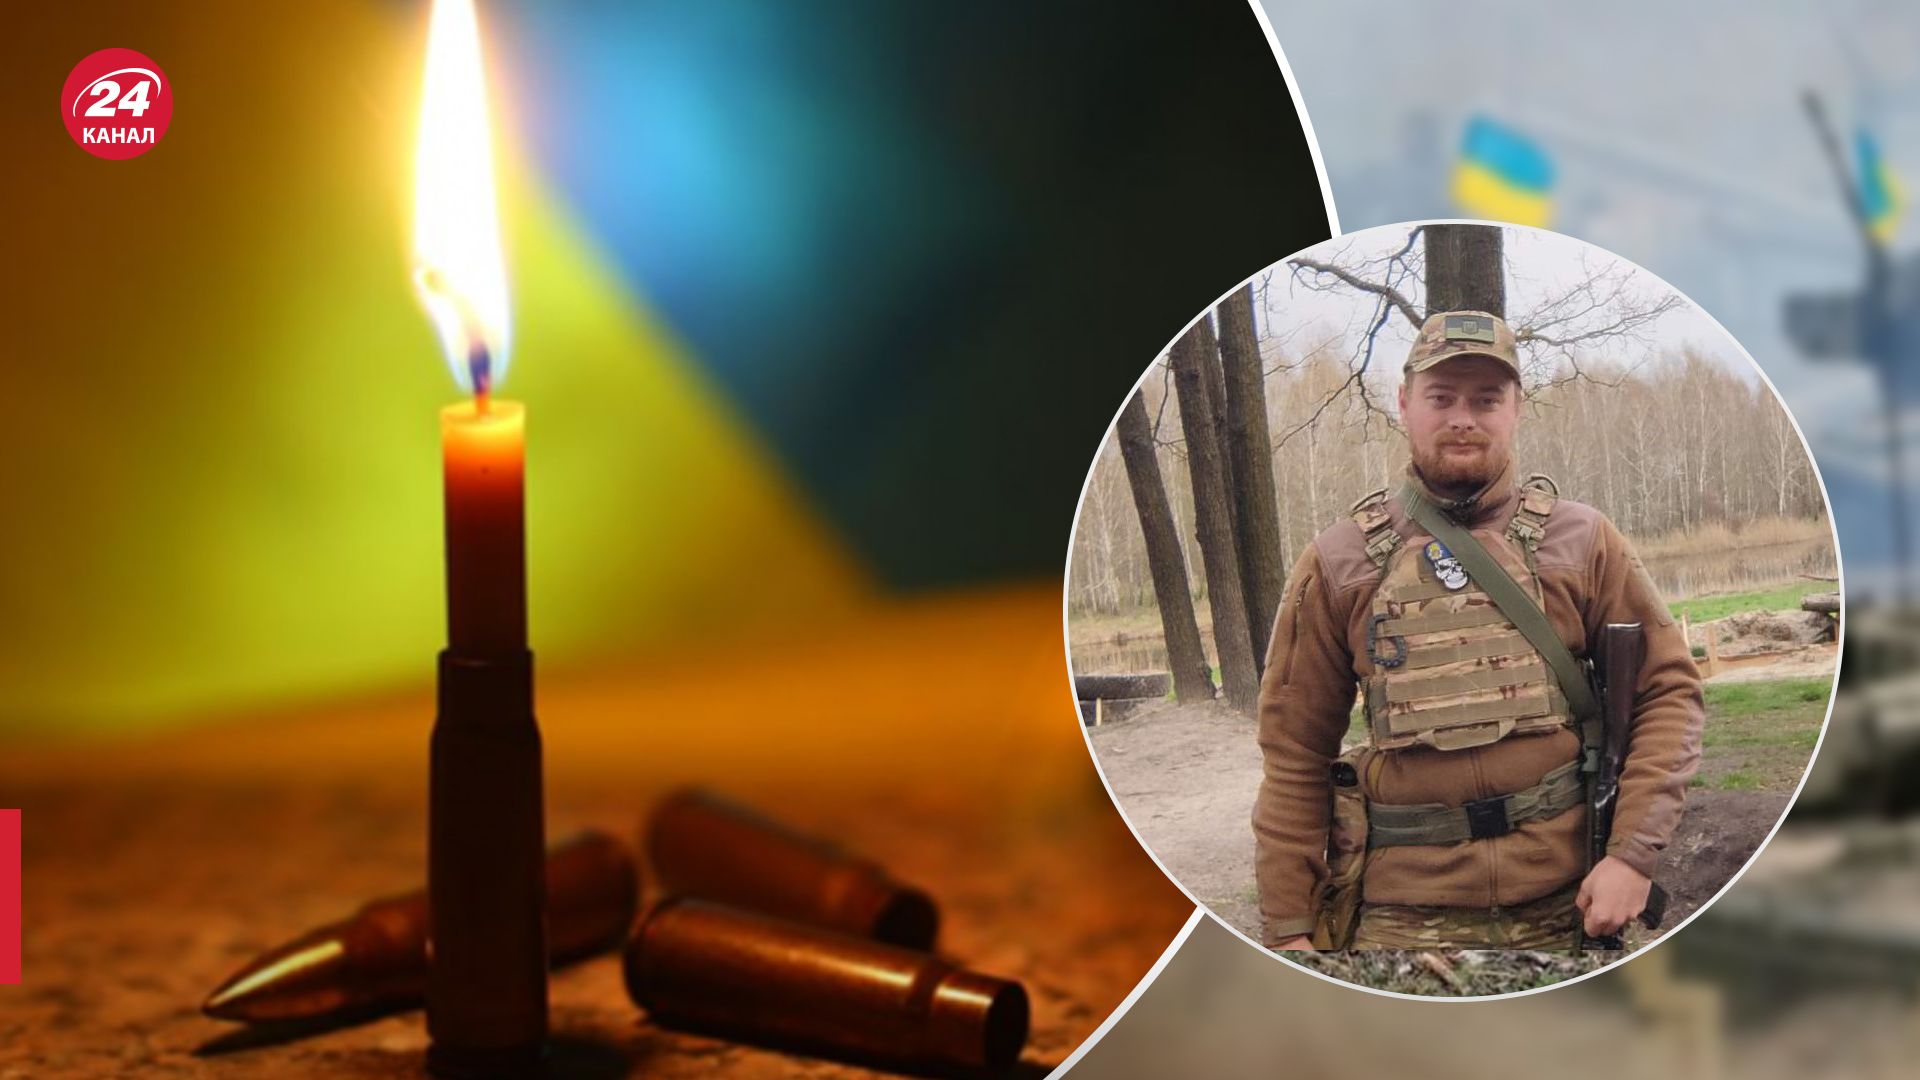 Загинув воїн Руслан Ружицький, який 5 років захищав Україну - 24 Канал